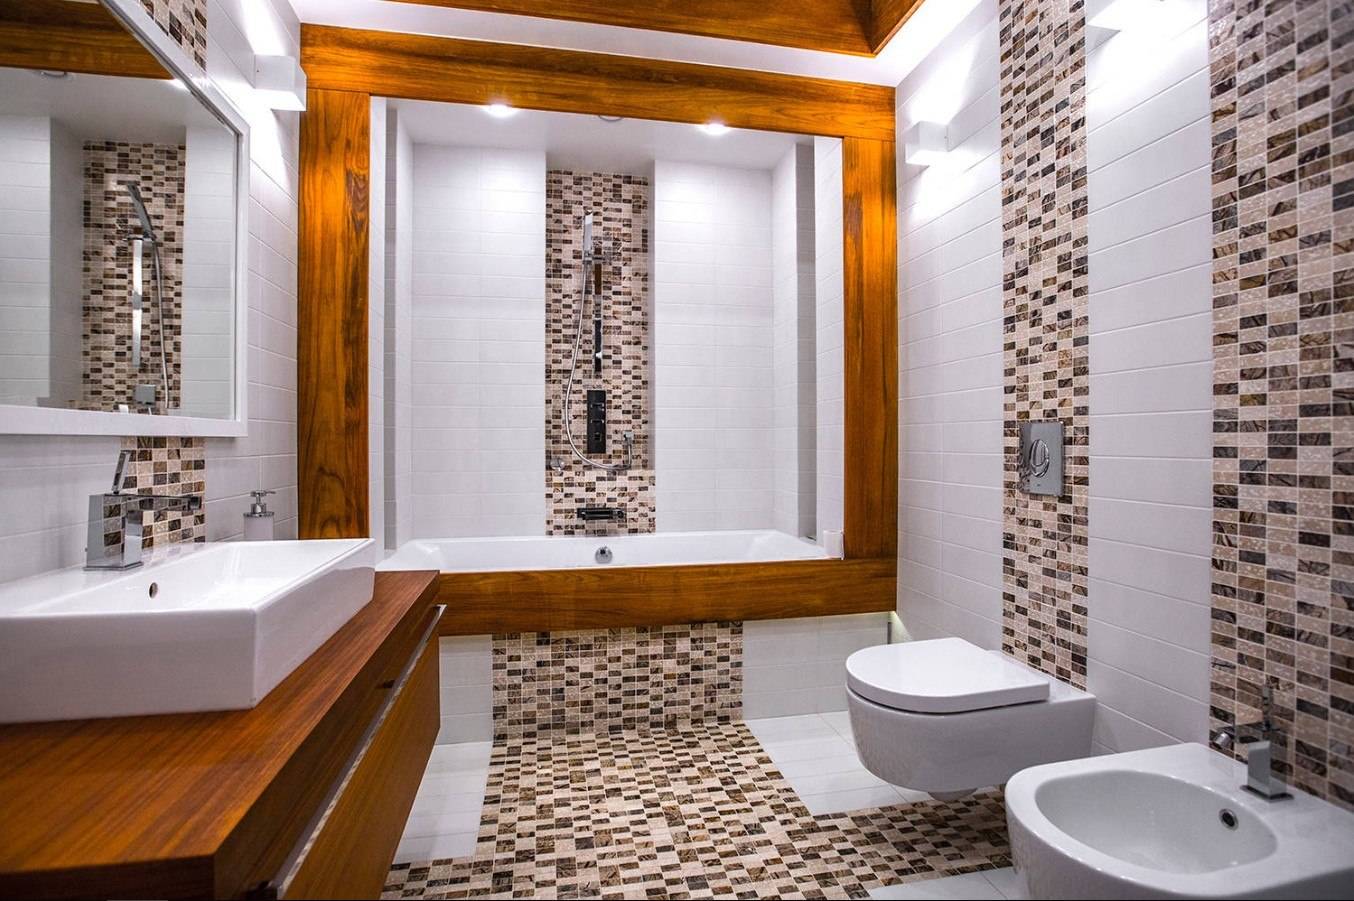 Плитка в ванной комнате: советы дизайнеров и фото